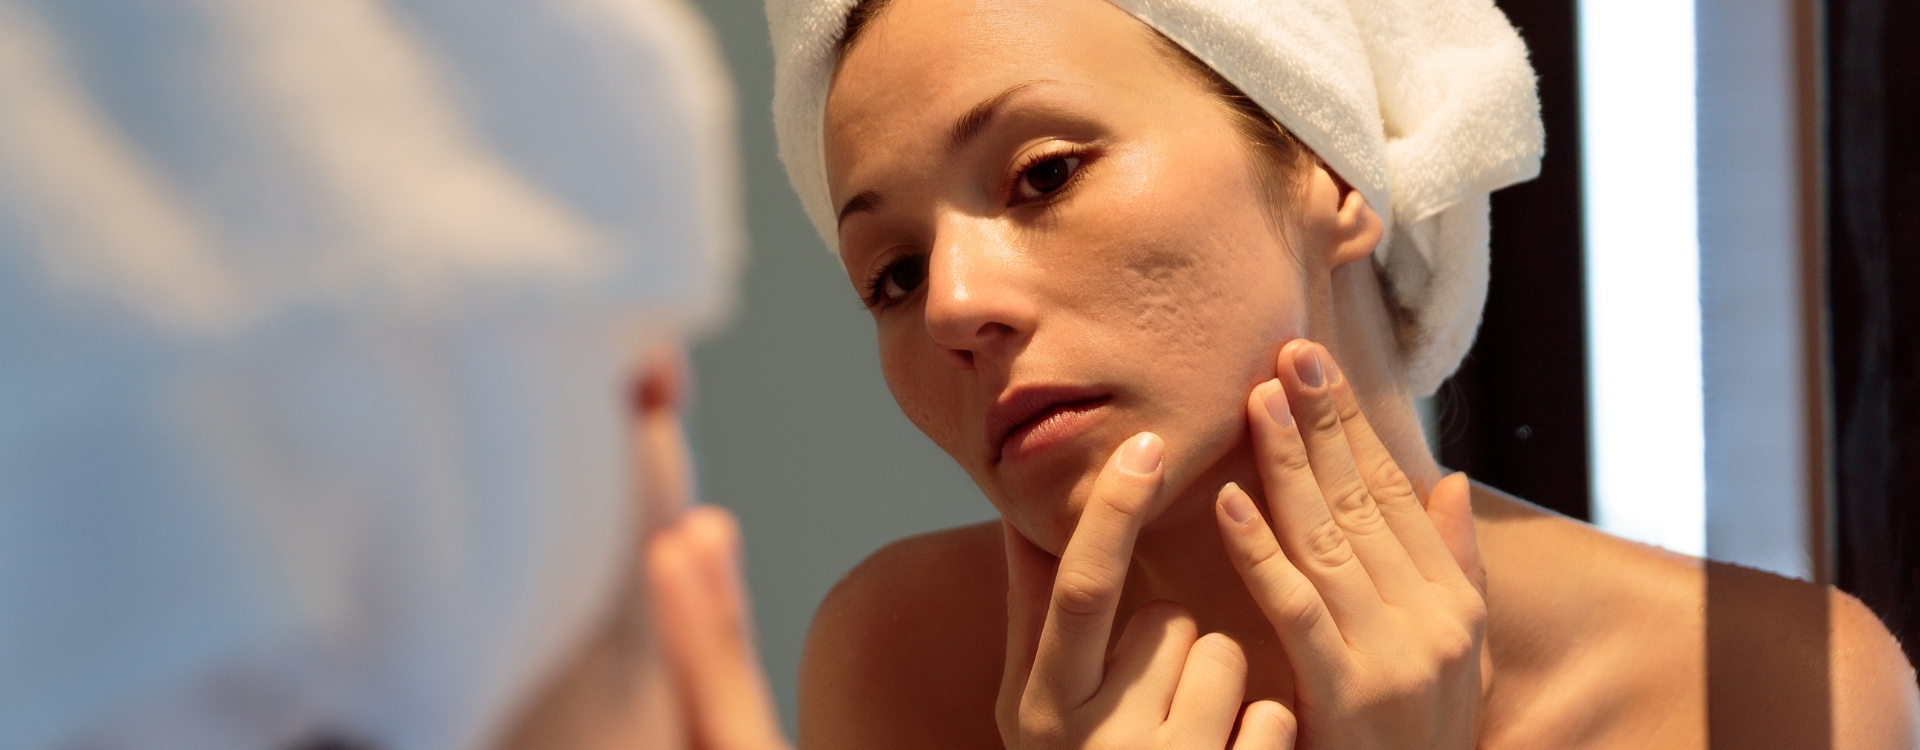 Você está visualizando atualmente O que é a acne e como ela pode ser tratada?